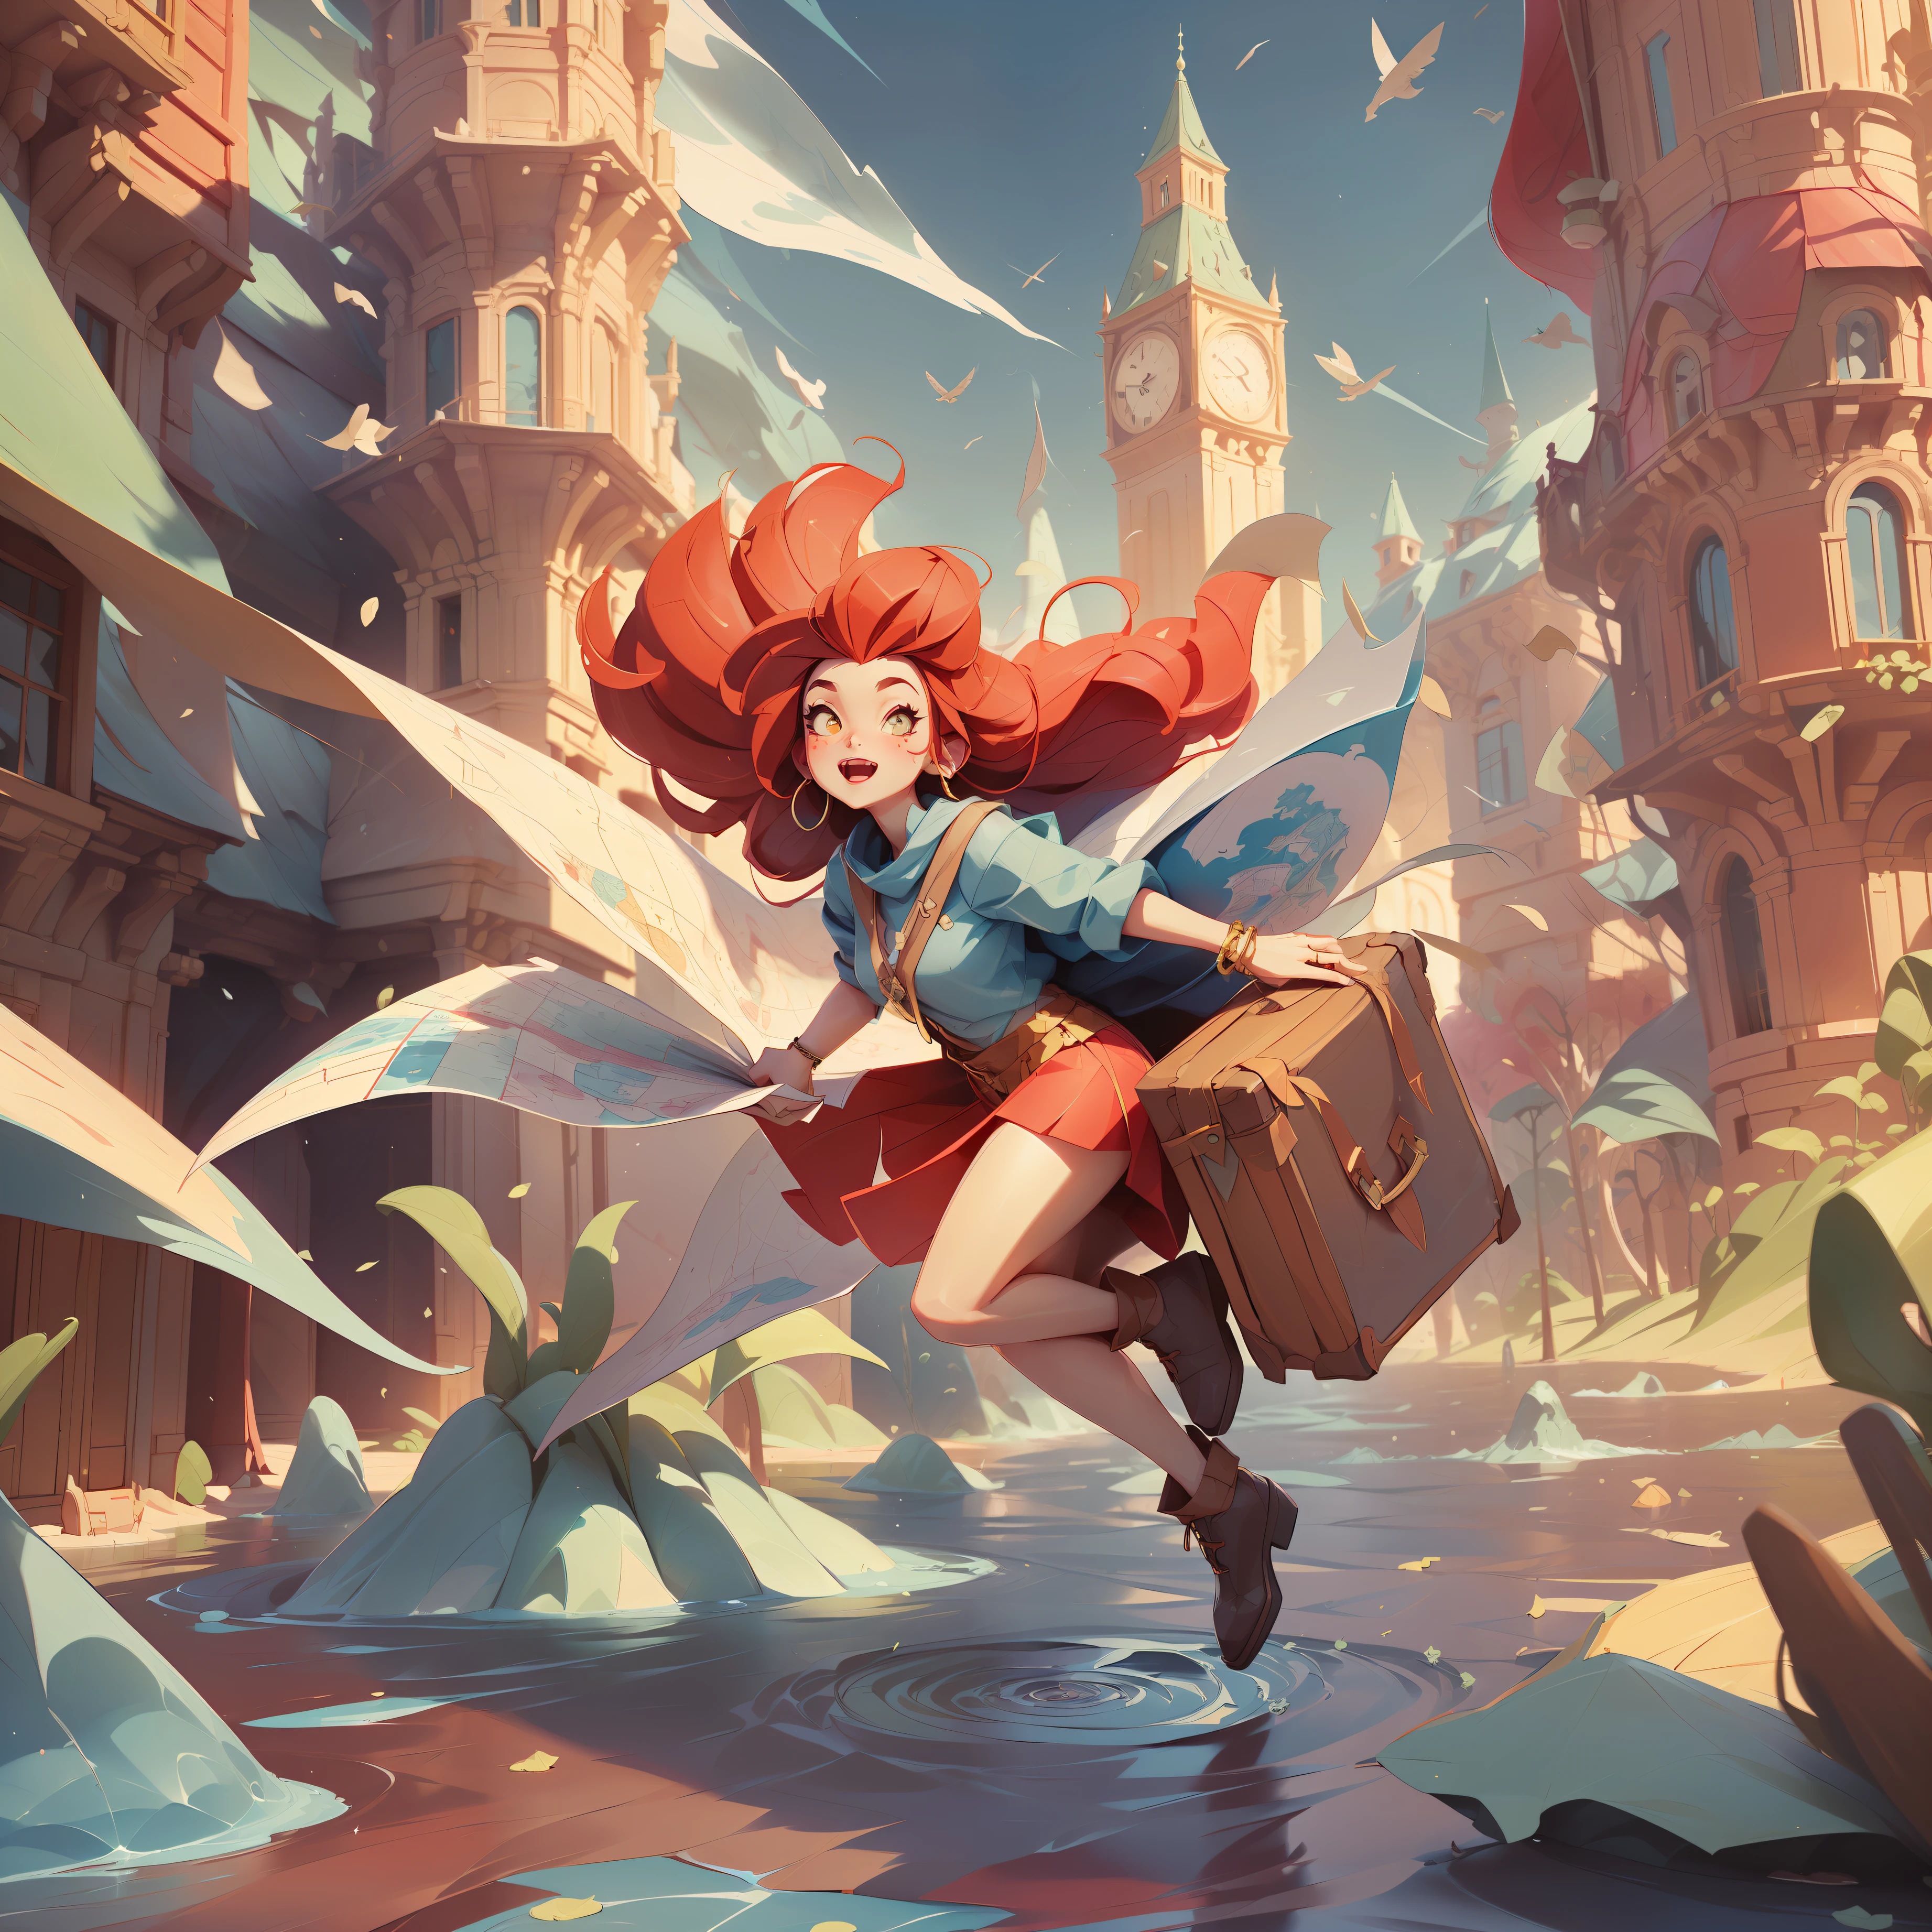 (((шедевр)путешественник, карты летают на ветру, магические частицы, загадочная девушка, яркие цвета, 1 девушка, девушка с рыжими волосами